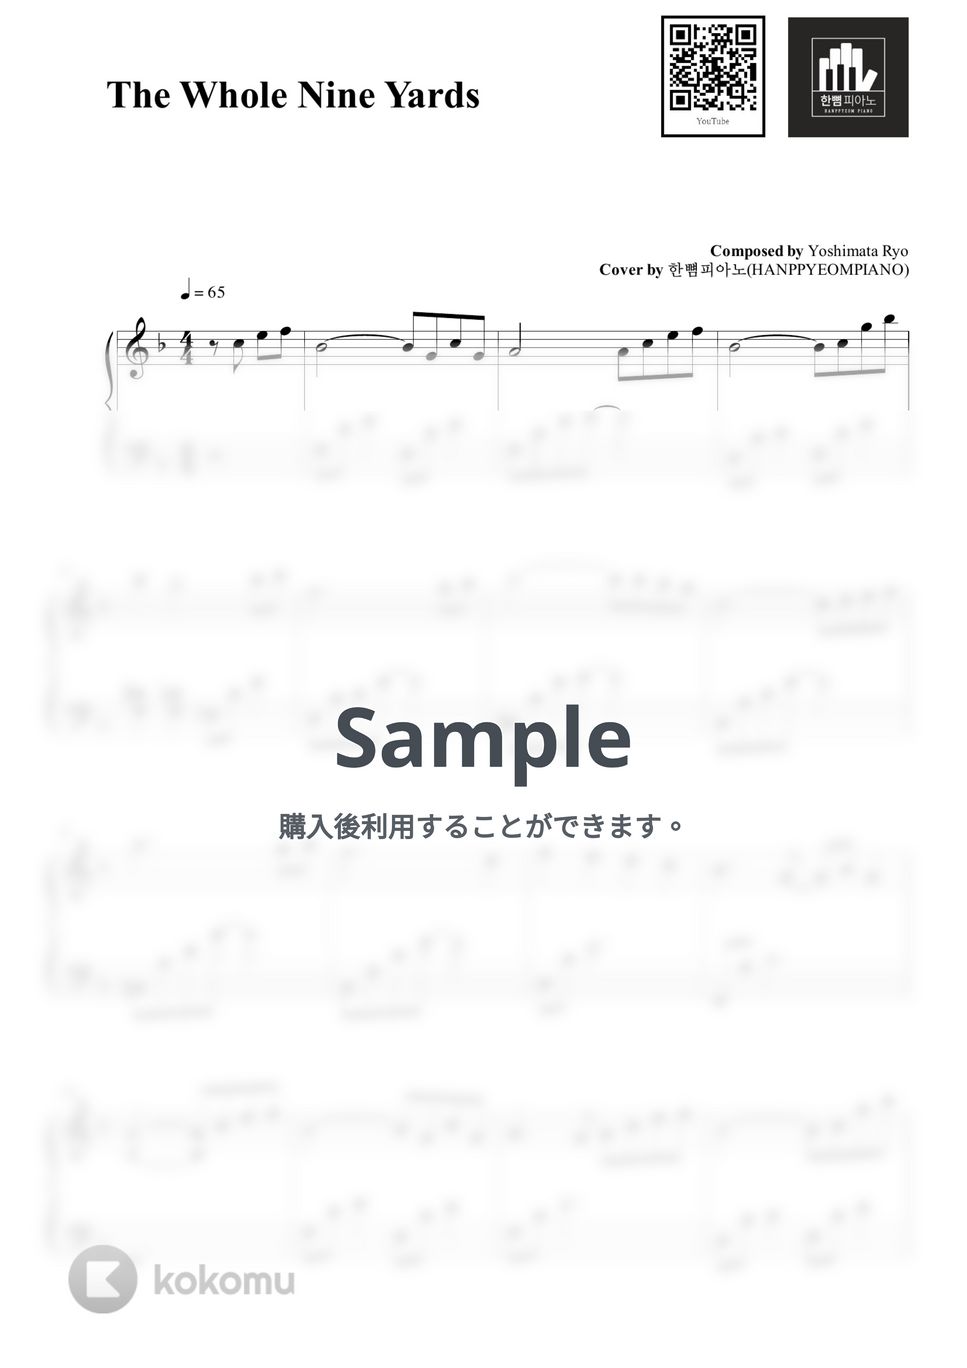 Yoshimata Ryo - The Whole Nine Yards (PIANO COVER) by HANPPYEOMPIANO